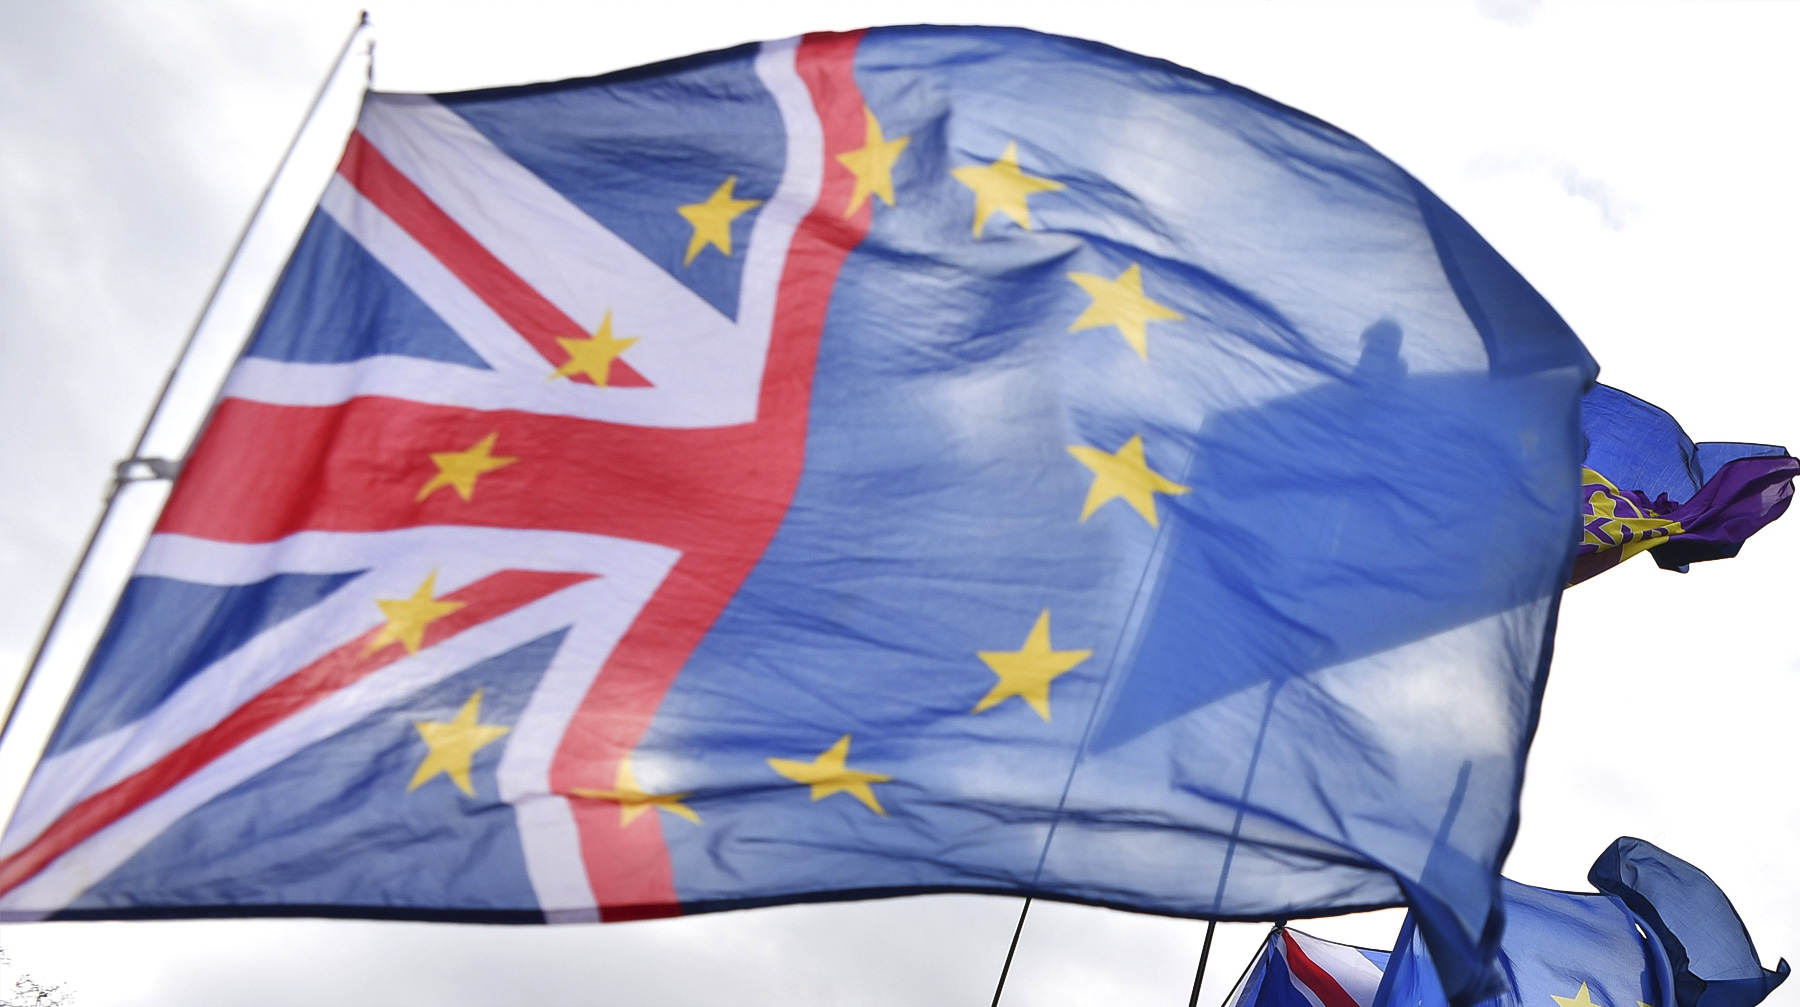 Провал соглашения превращает процесс выхода страны из Евросоюза в хаос, считают СМИ Великобритании Фото: © GLOBAL LOOK Press /Alberto Pezzali / ZUMAPRESS.com